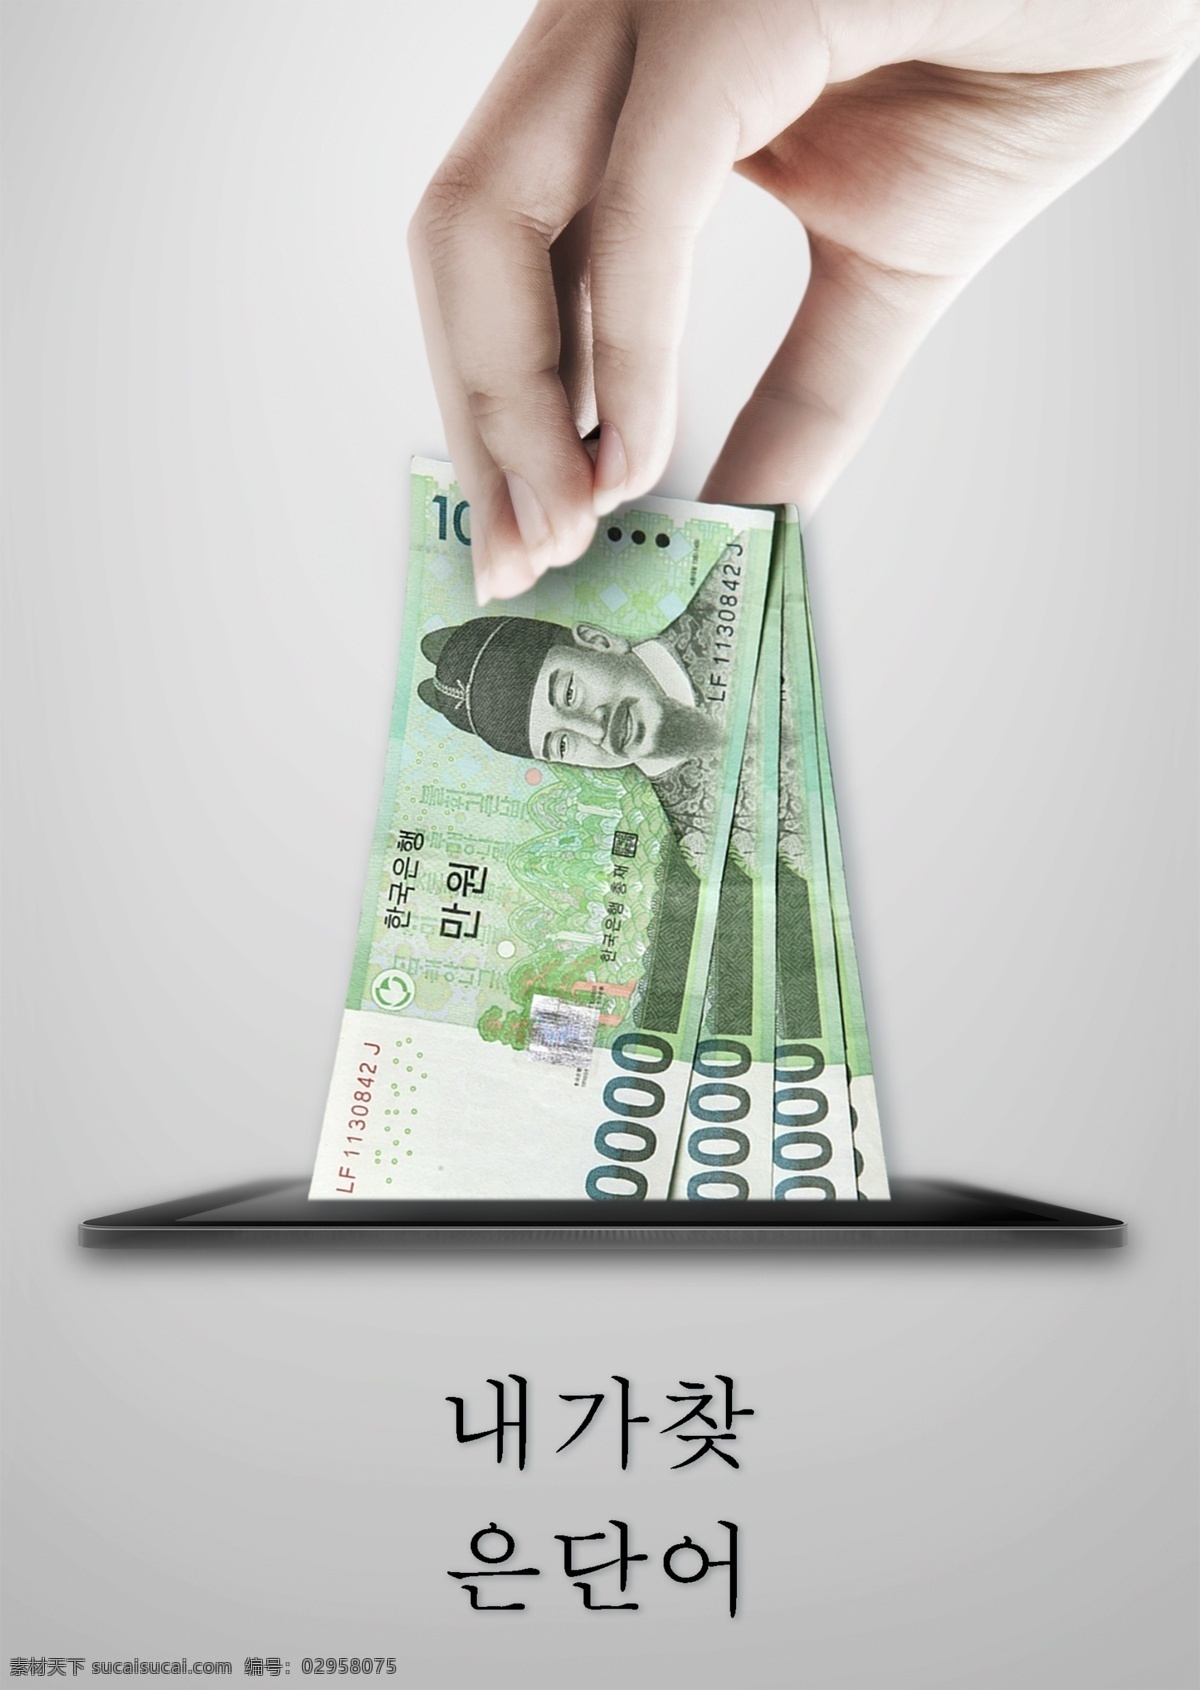 韩国 电子 公共服务 广告 海报 床 肝药物 灰色背景 汉族 移动电话 钓鱼 adverti